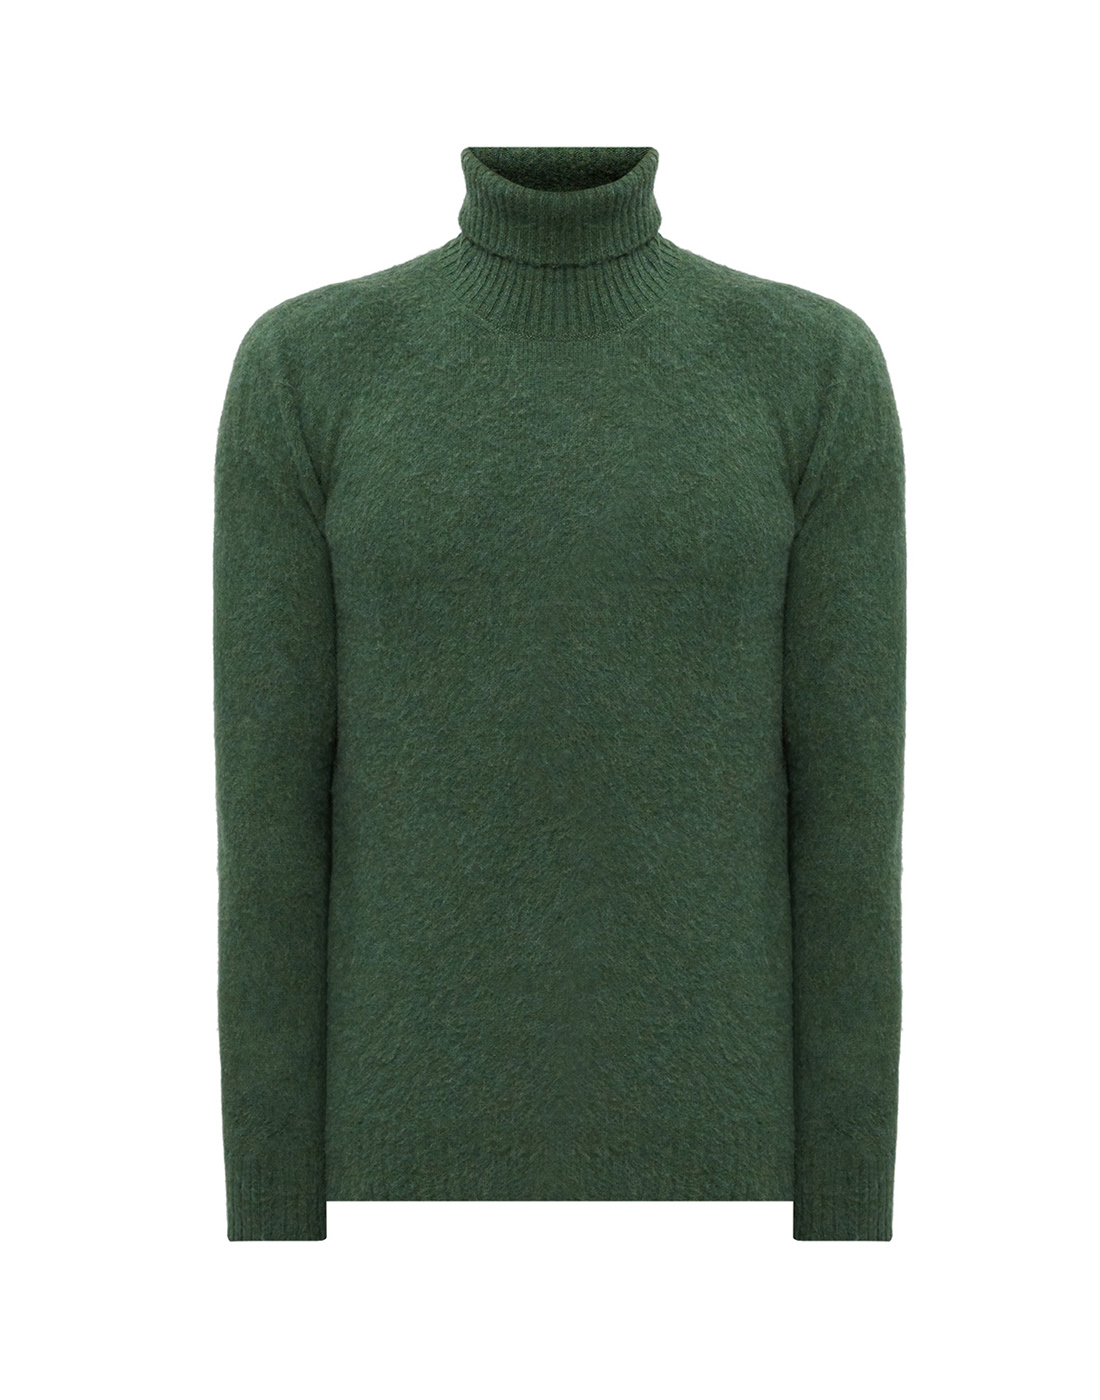 Мужской зеленый шерстяной свитер Barba S1880124596/456-1